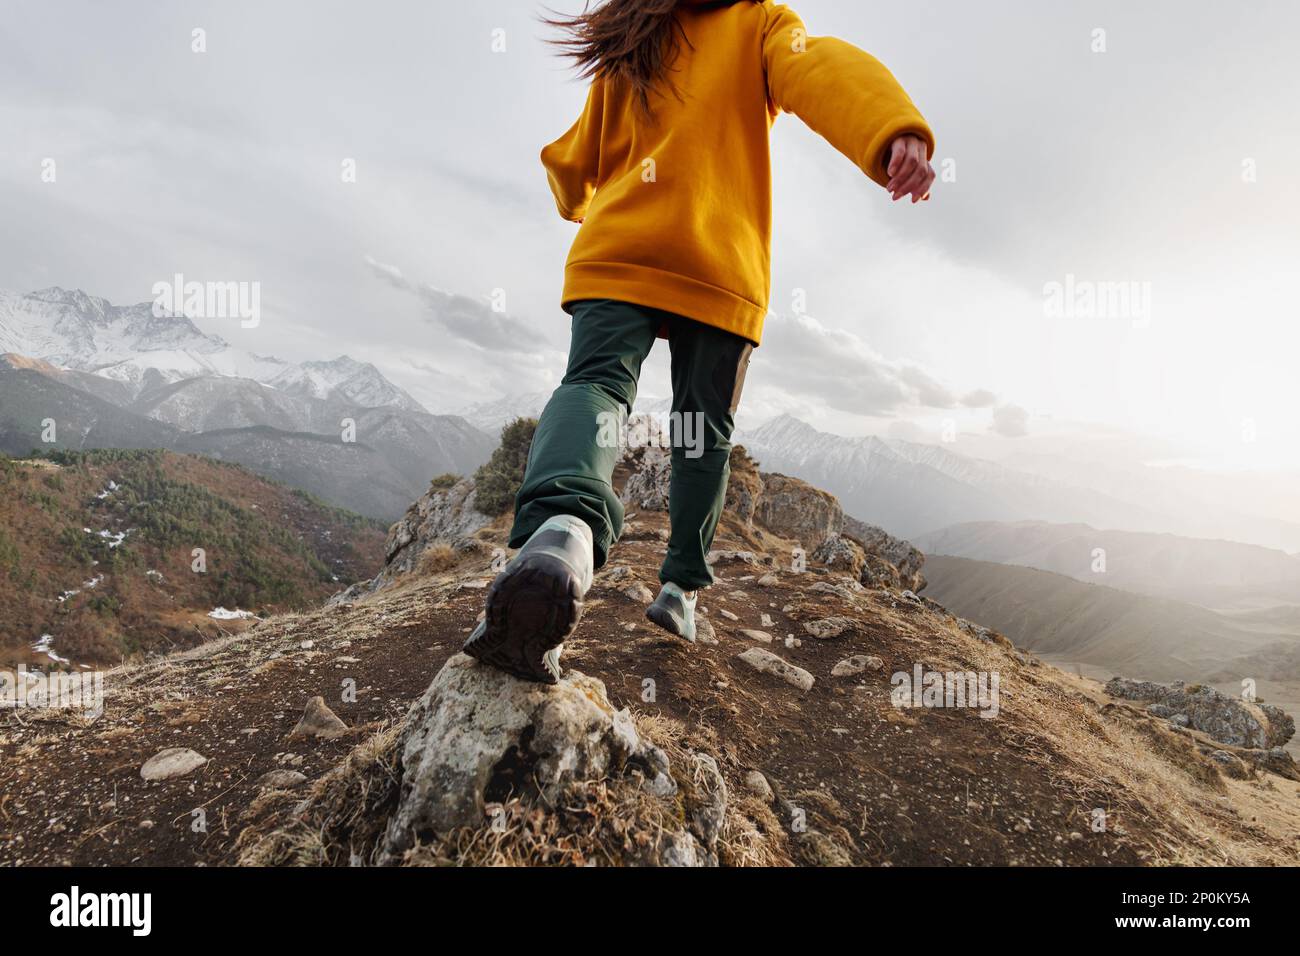 Sportliches junges Mädchen liegt in den Bergen hoch. Konzept des aktiven Tourismus Stockfoto